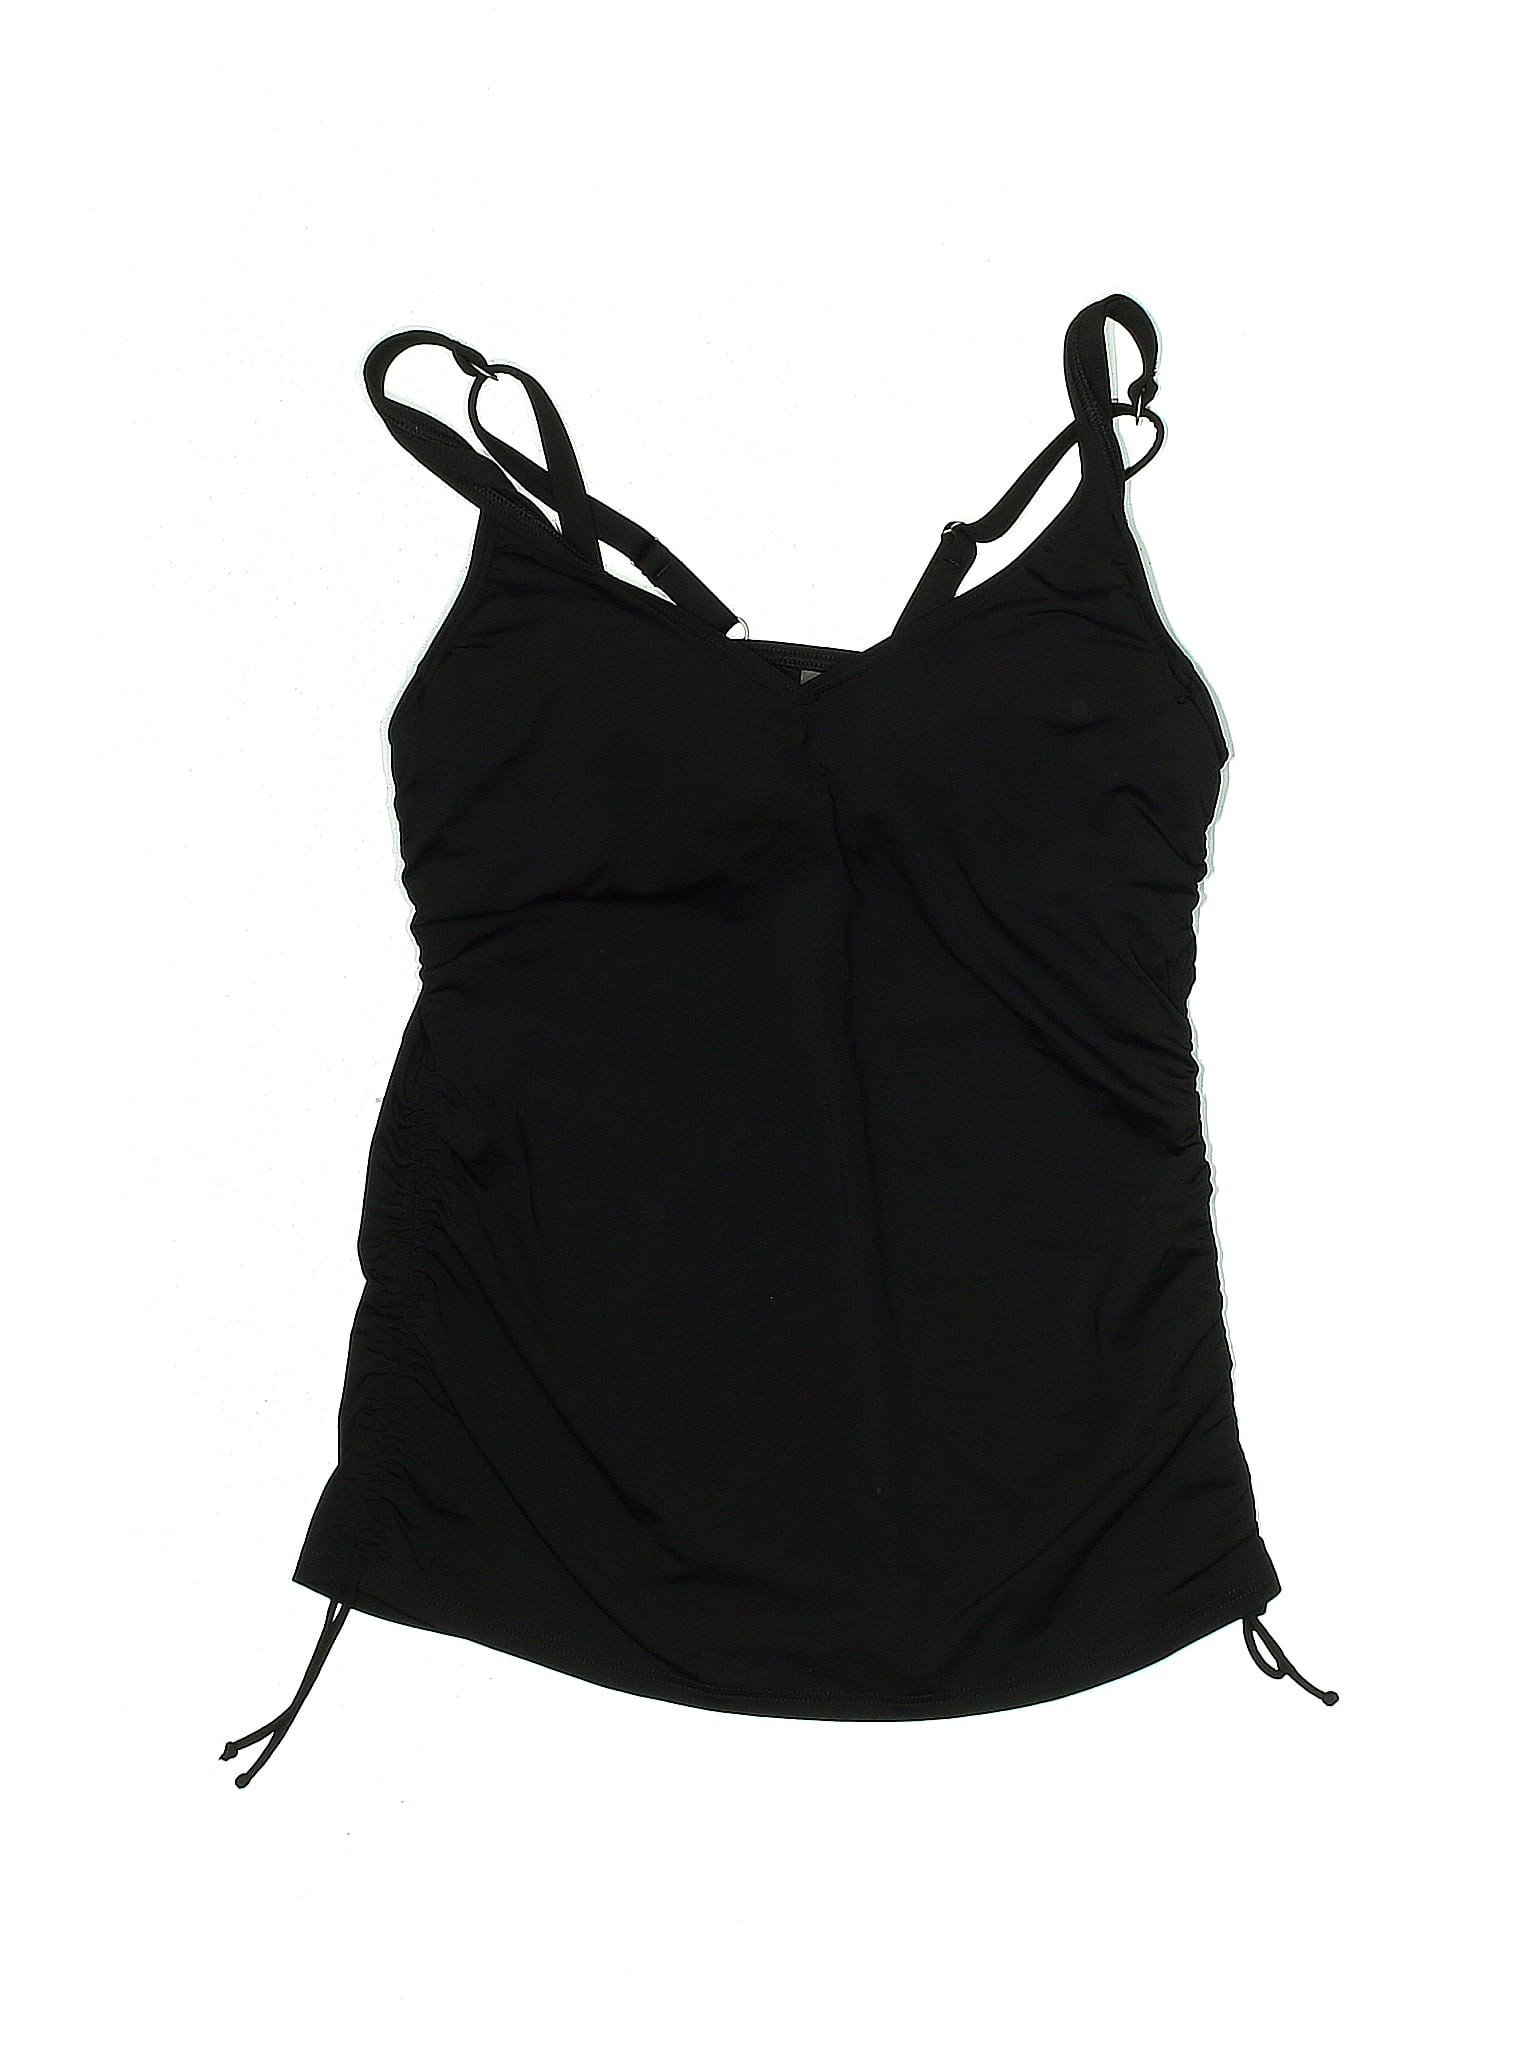 Lands' End Solid Black Swimsuit Top Size 4 - 60% off | thredUP